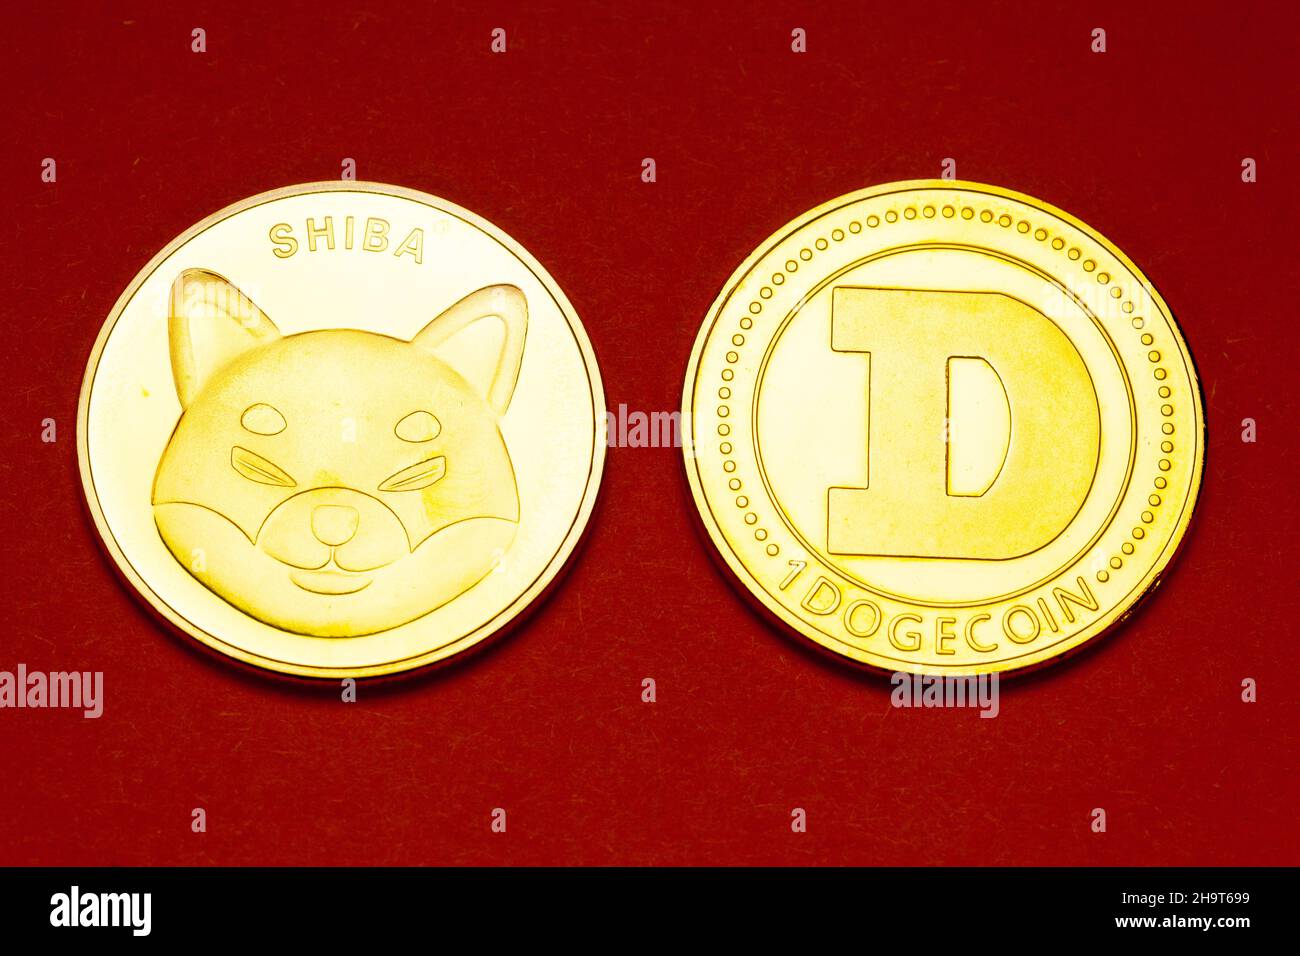 Shiba Inu y Doge moneda meme monedas de criptomoneda Foto de stock